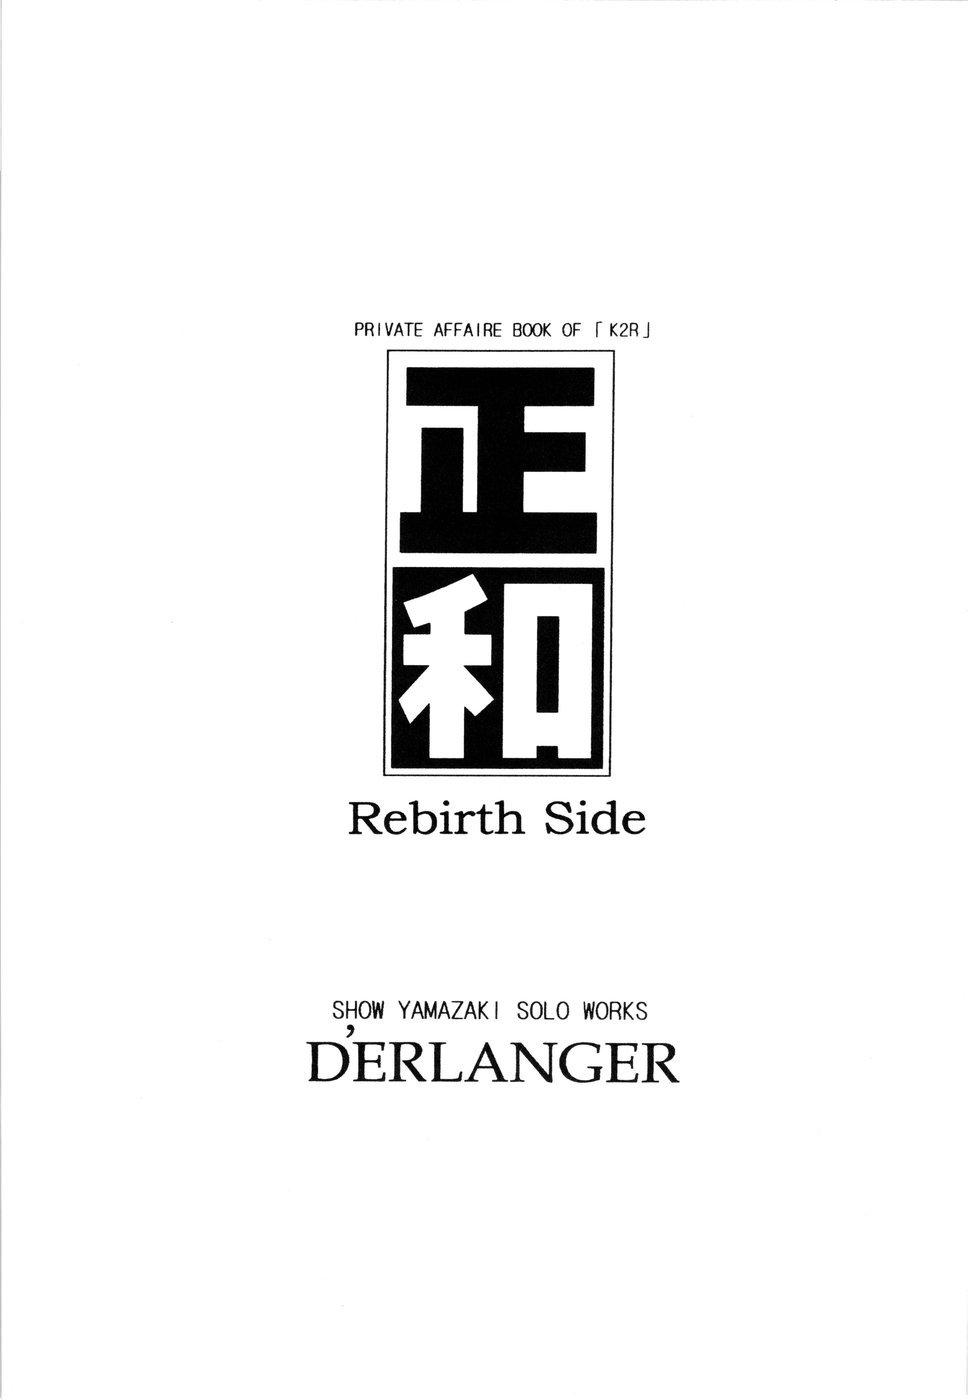 Masakazu Rebirth Side 2